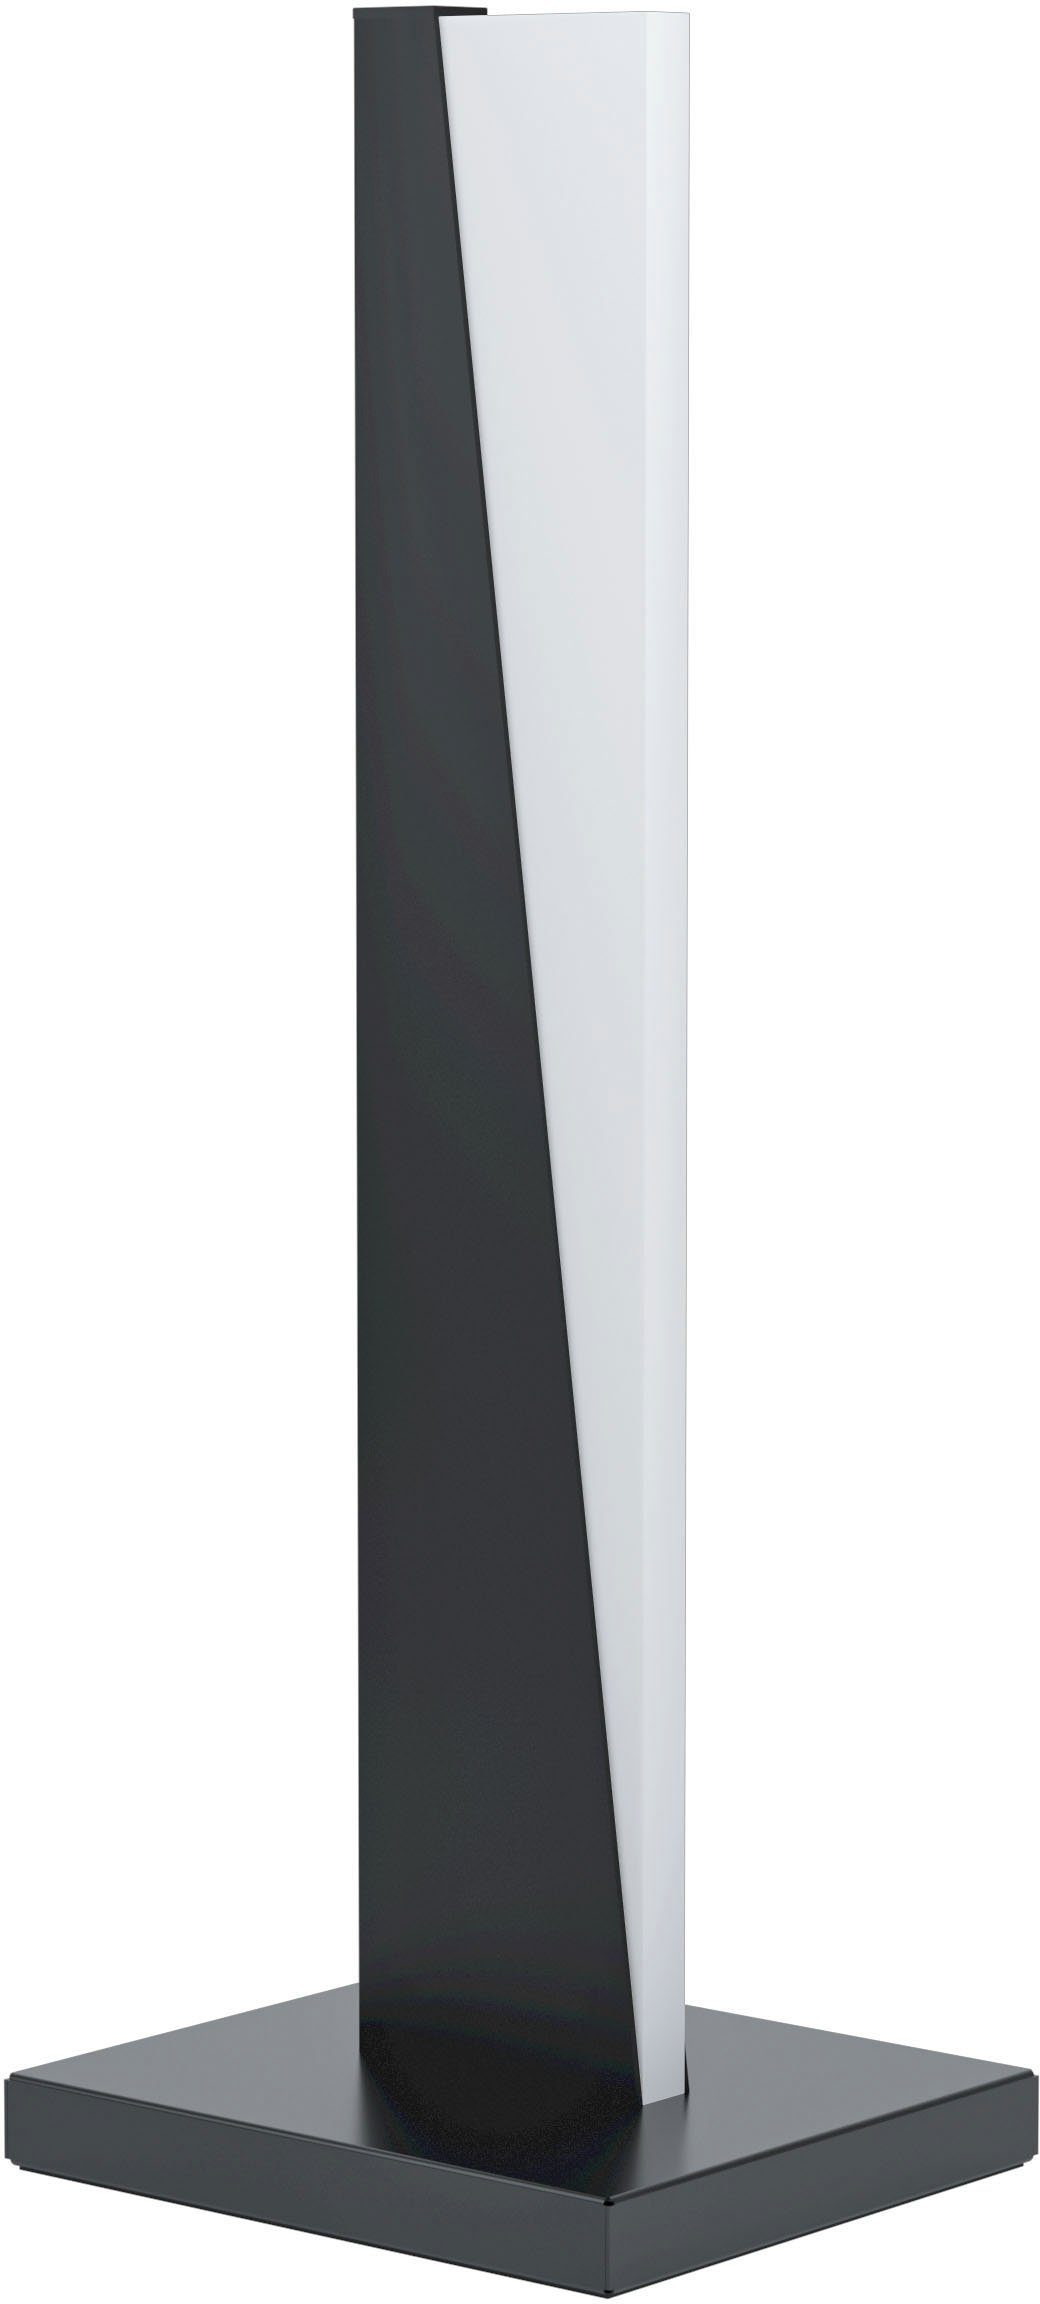 EGLO Tischleuchte LED schwarz Alu, Stahl - integriert, aus ISIDRO, fest Warmweiß in 9W - Warmweiß, Tischleuchte